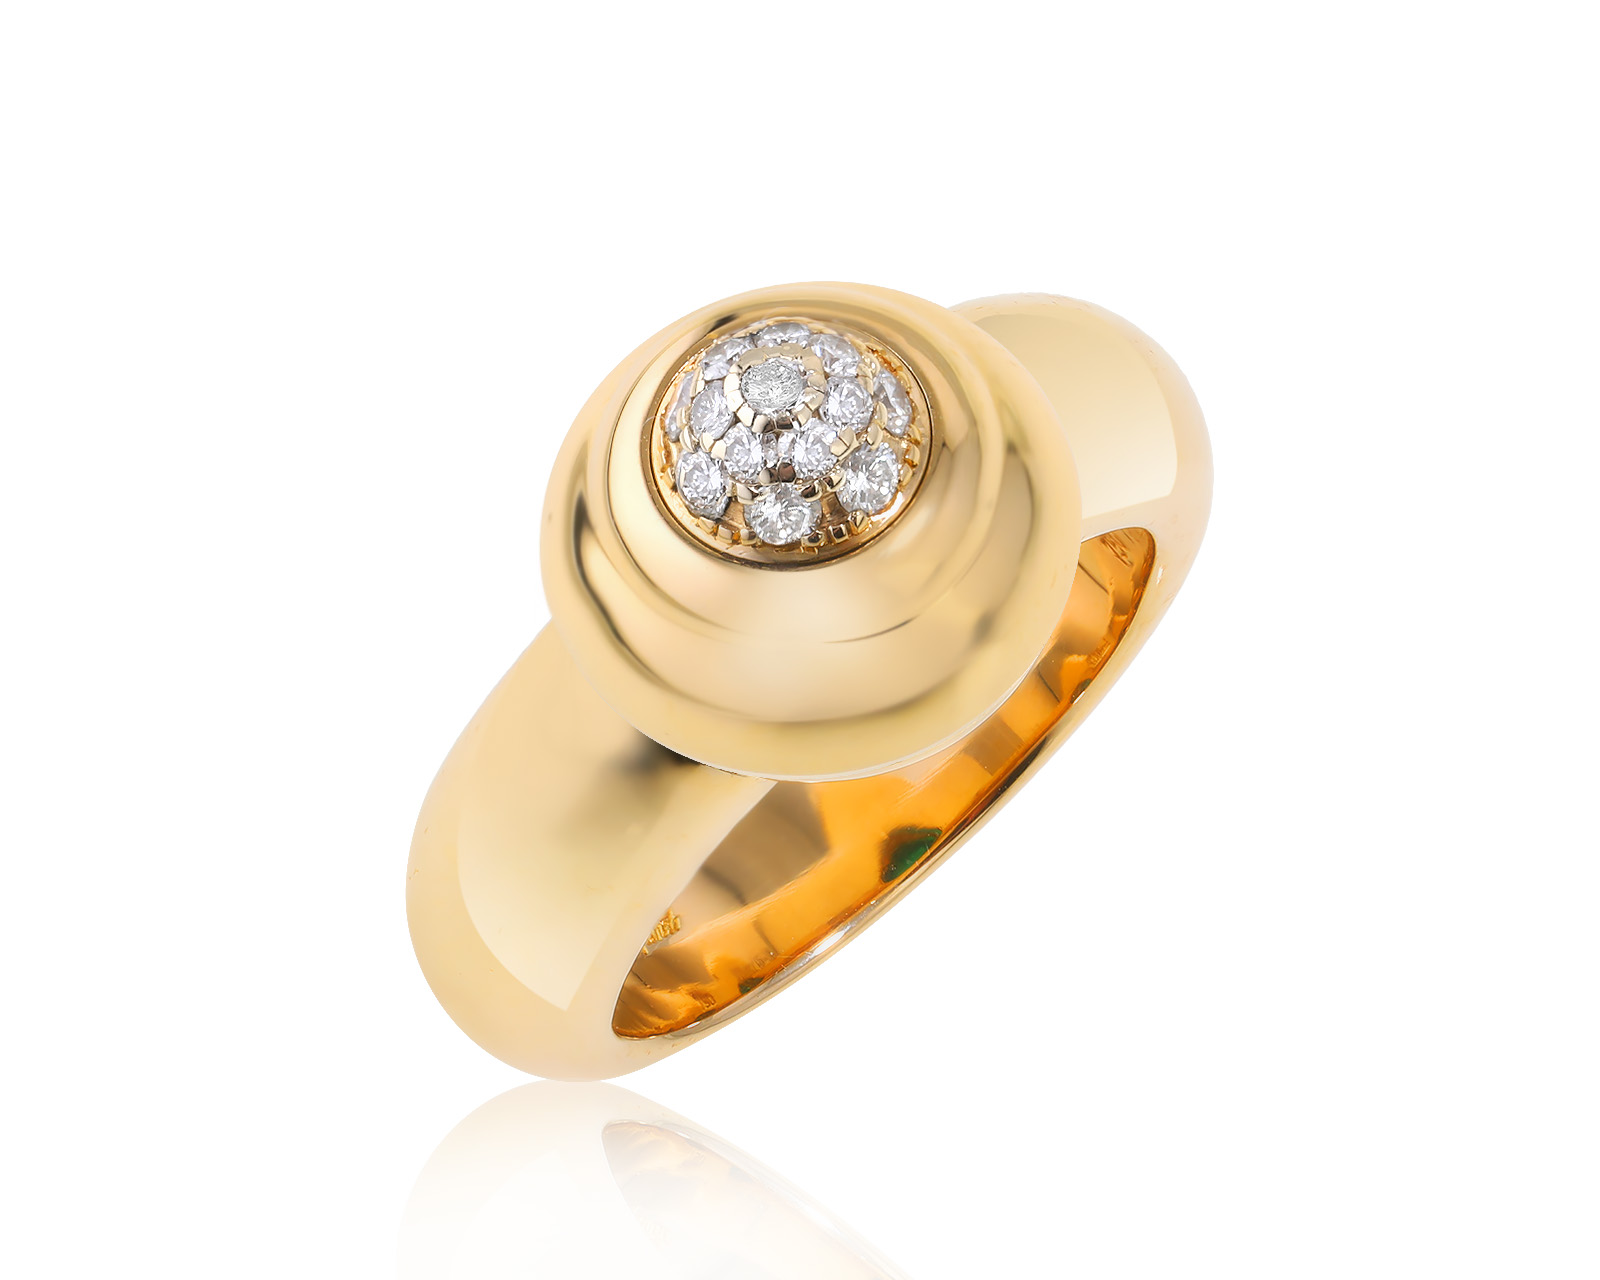 Оригинальное золотое кольцо Chopard